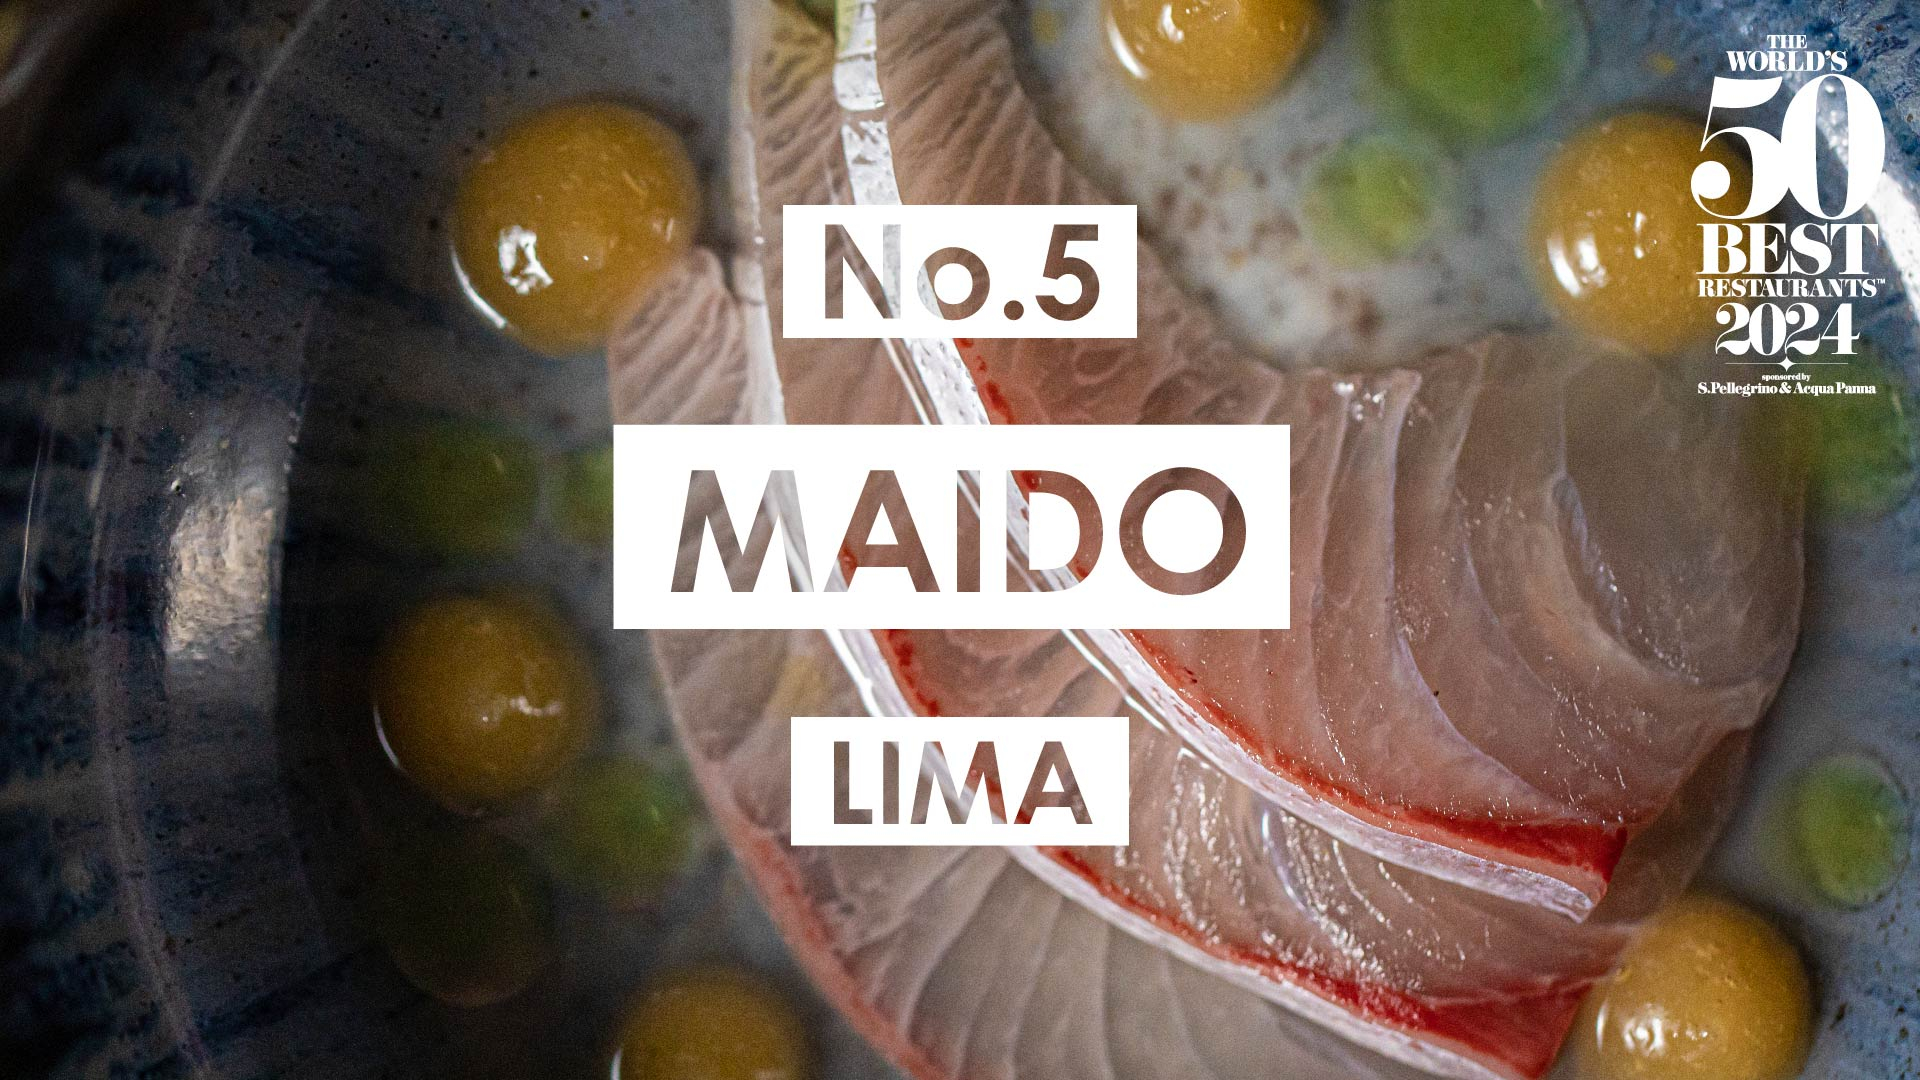 El mejor restaurante en Perú es el Maido. Foto: X